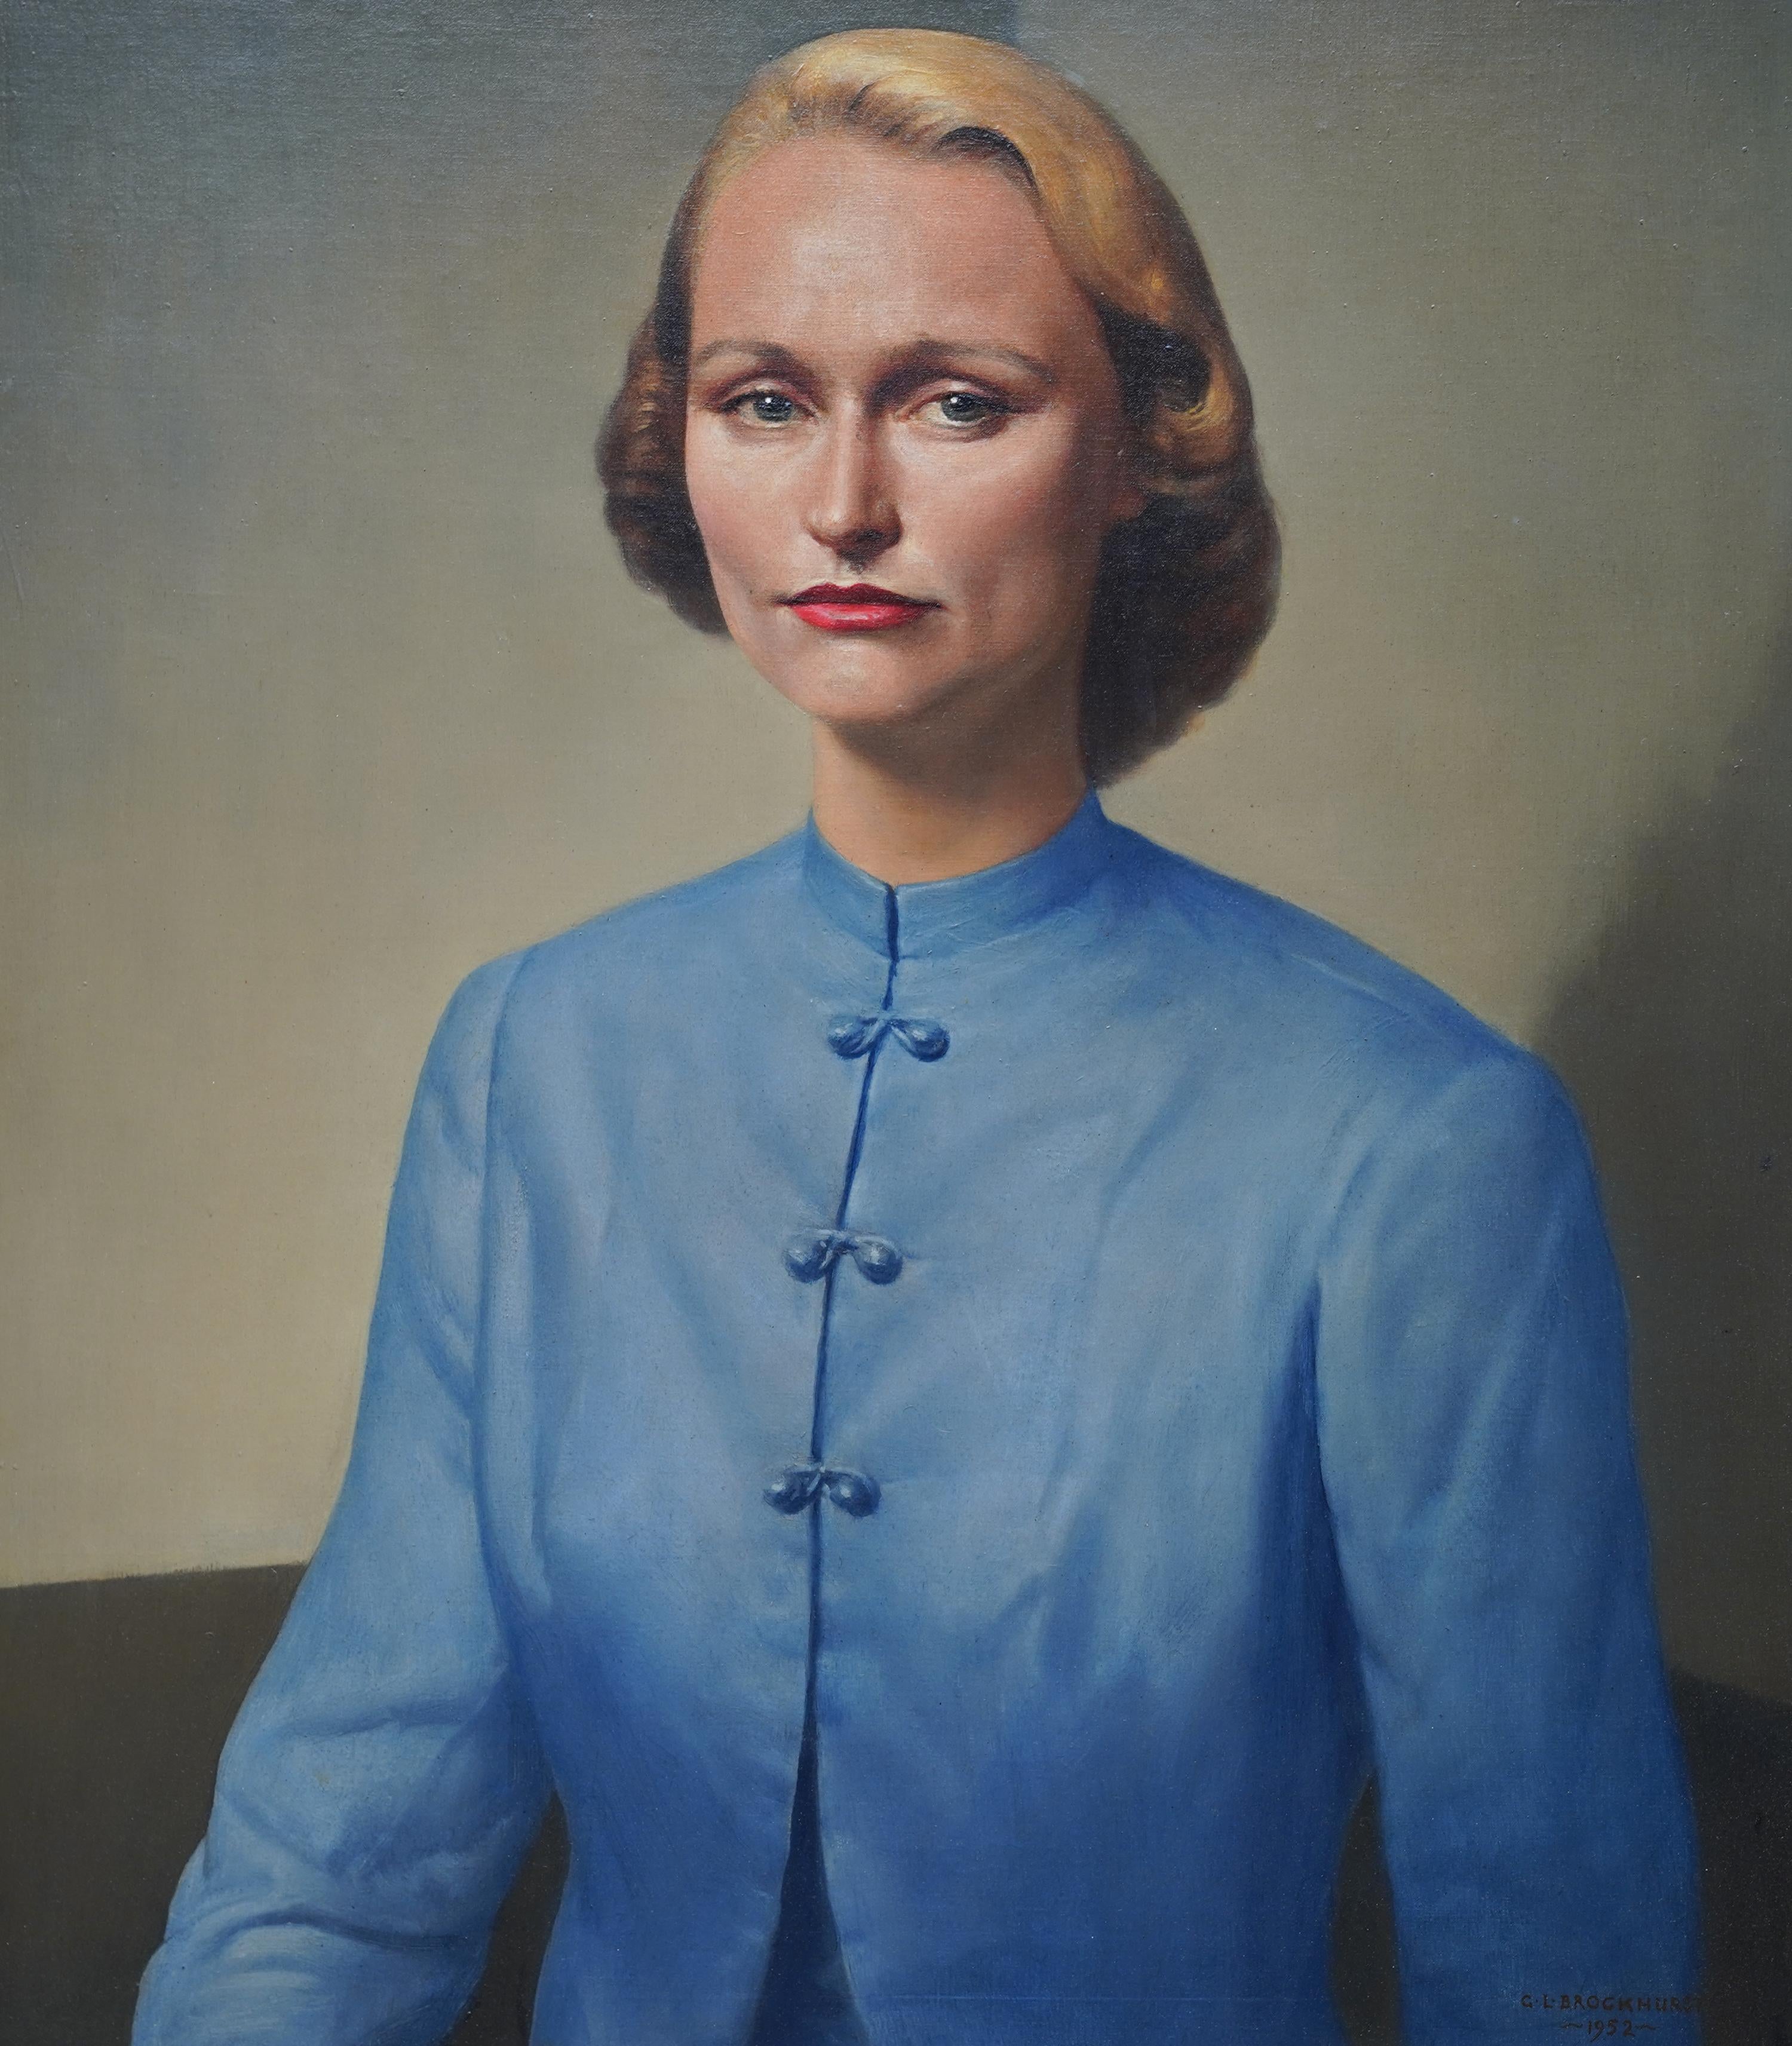 Porträt von Hope G. Simpson – britisches Frauenporträt-Ölgemälde von 1952 – Painting von Gerald Leslie Brockhurst